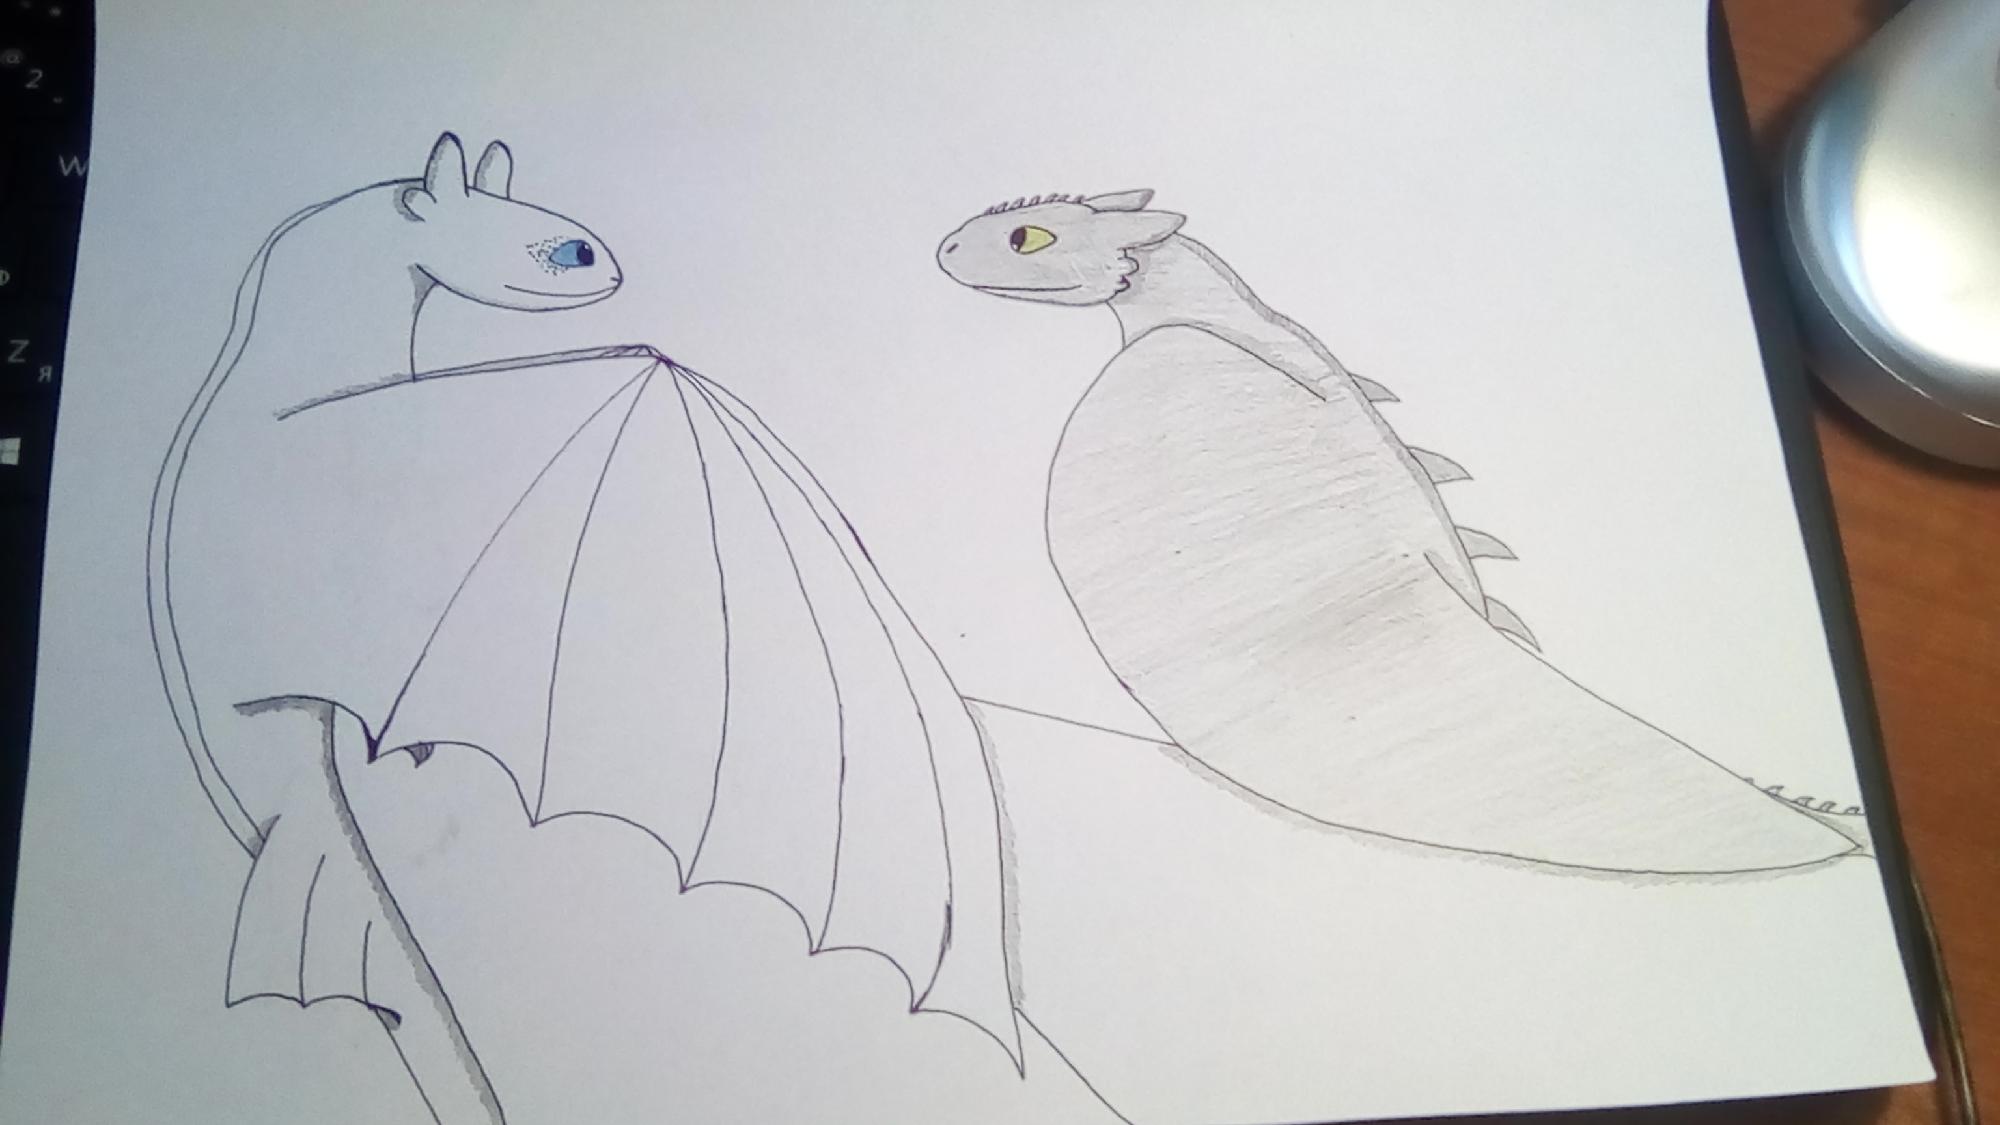 Распечатать раскраски из мультика Как приручить дракона (How to Train Your Dragon)